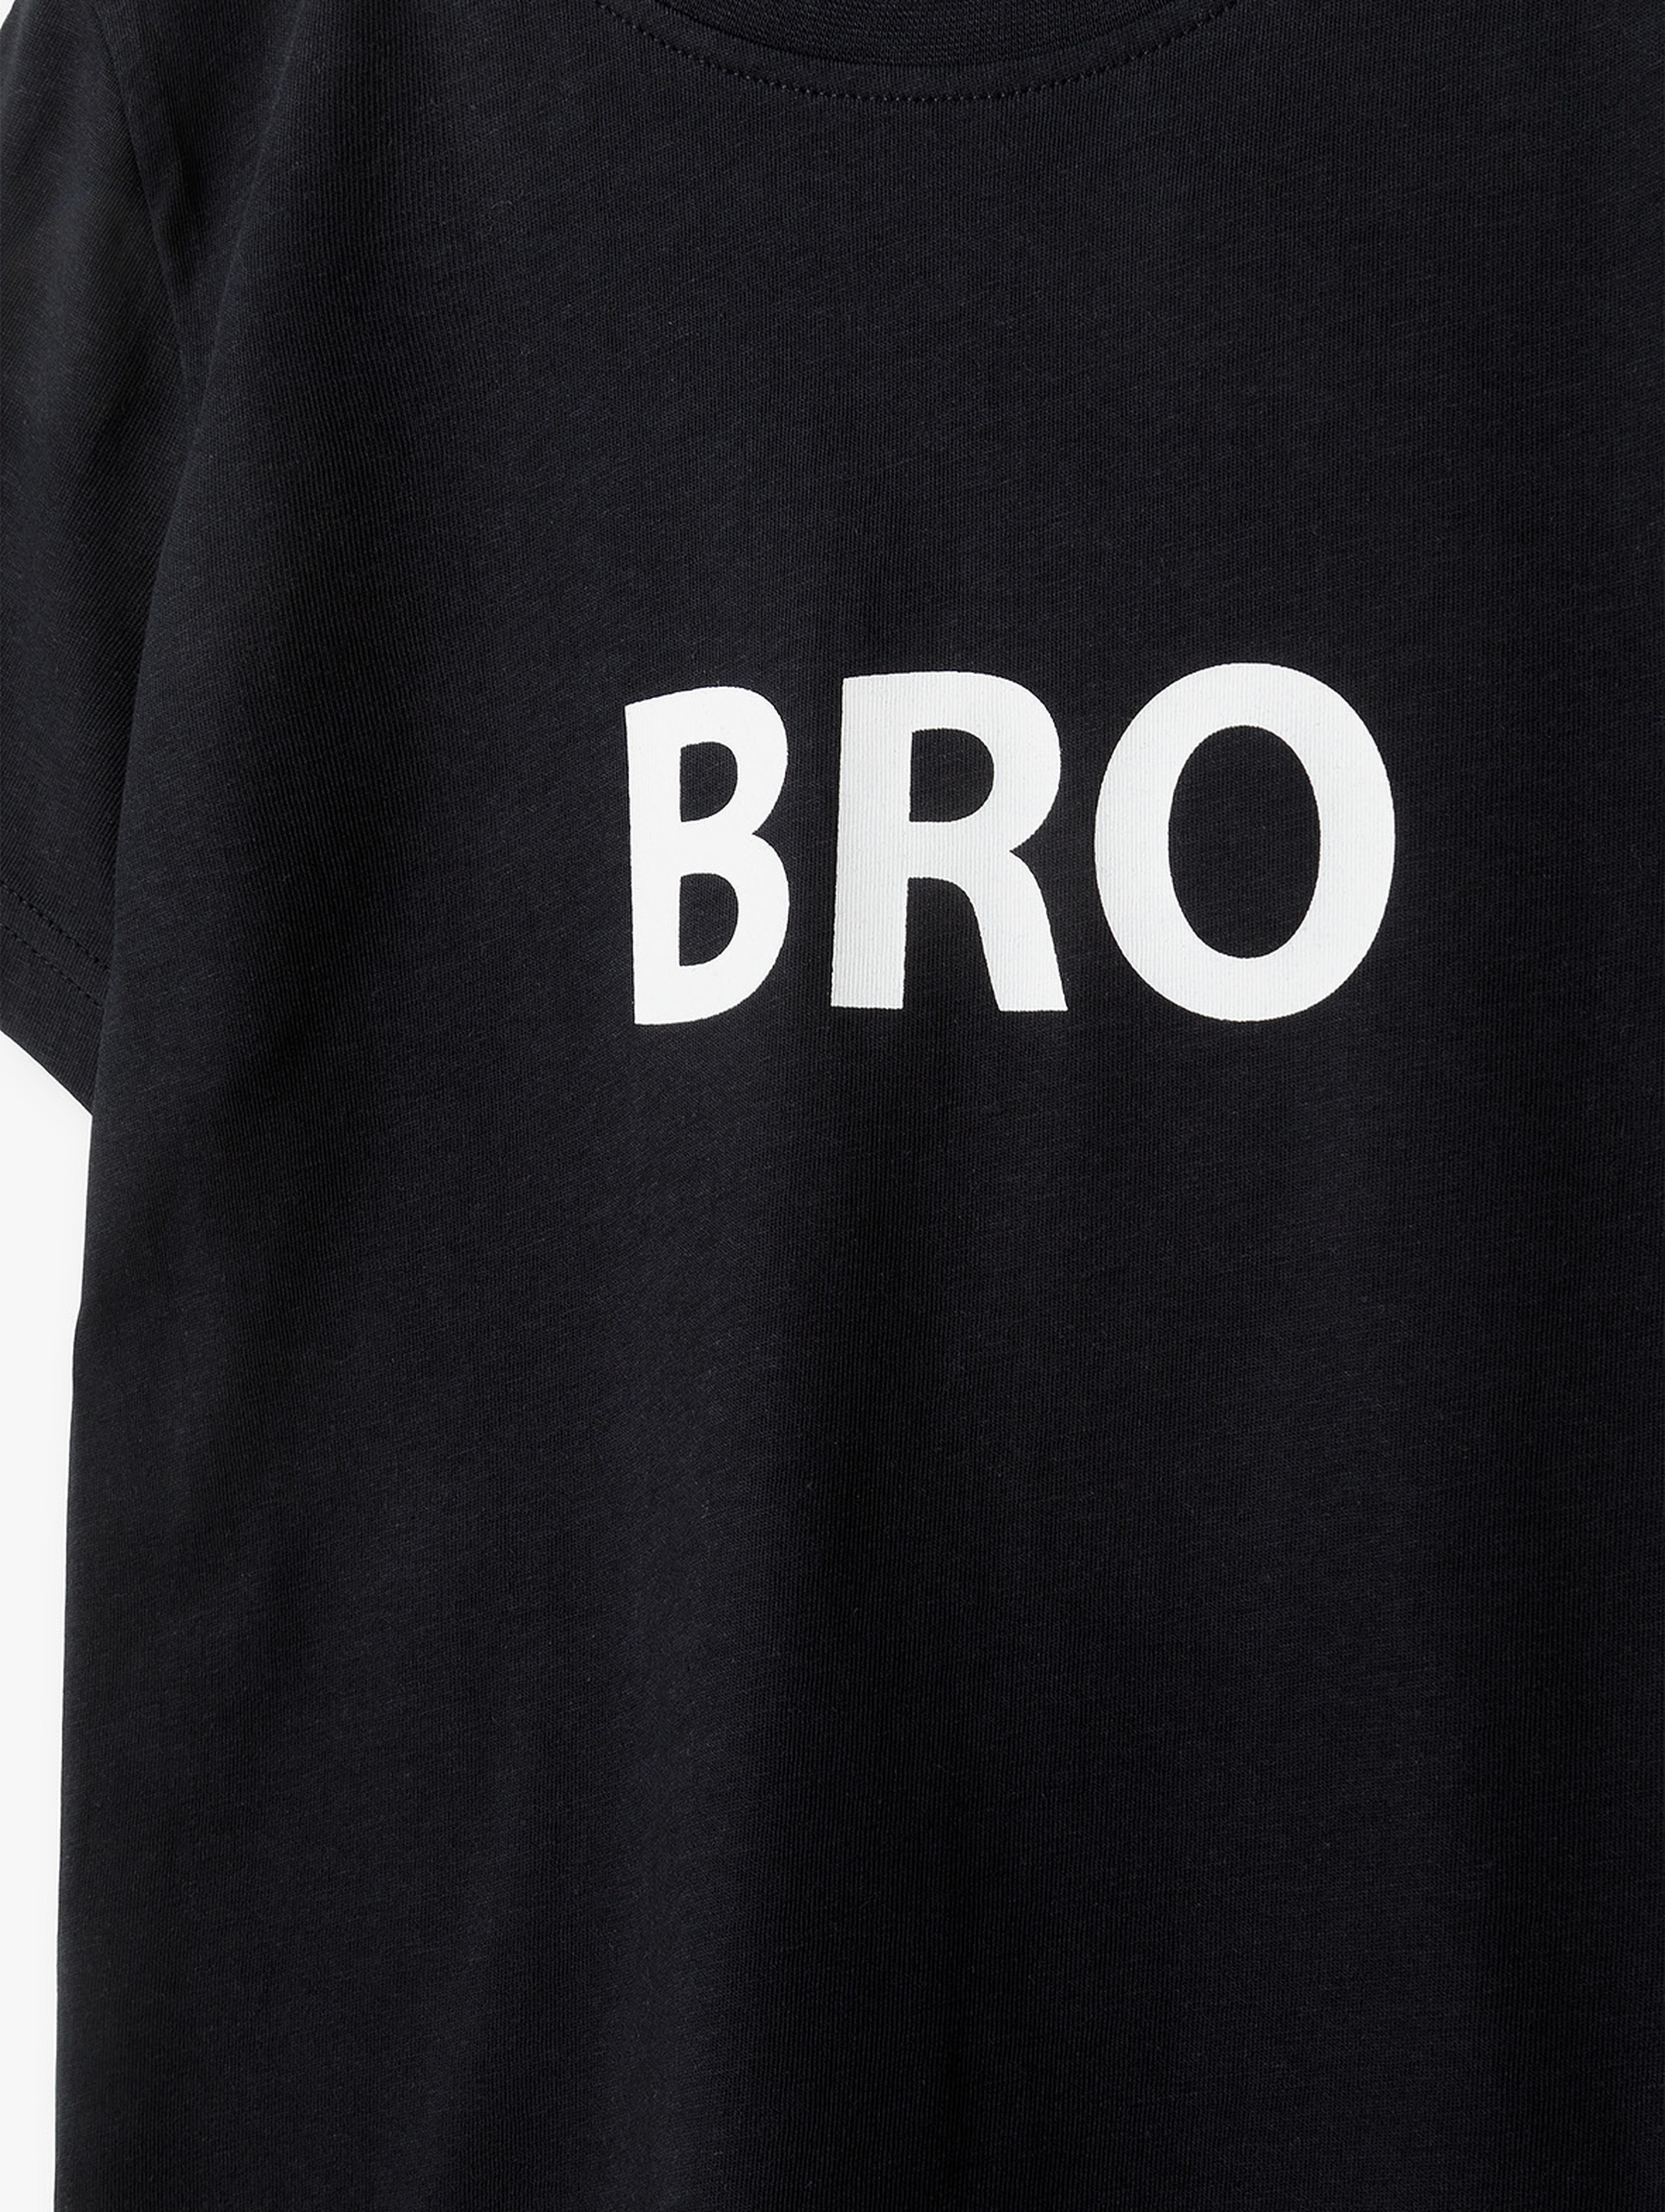 T-shirt chłopięcy czarny z napisem  - BRO